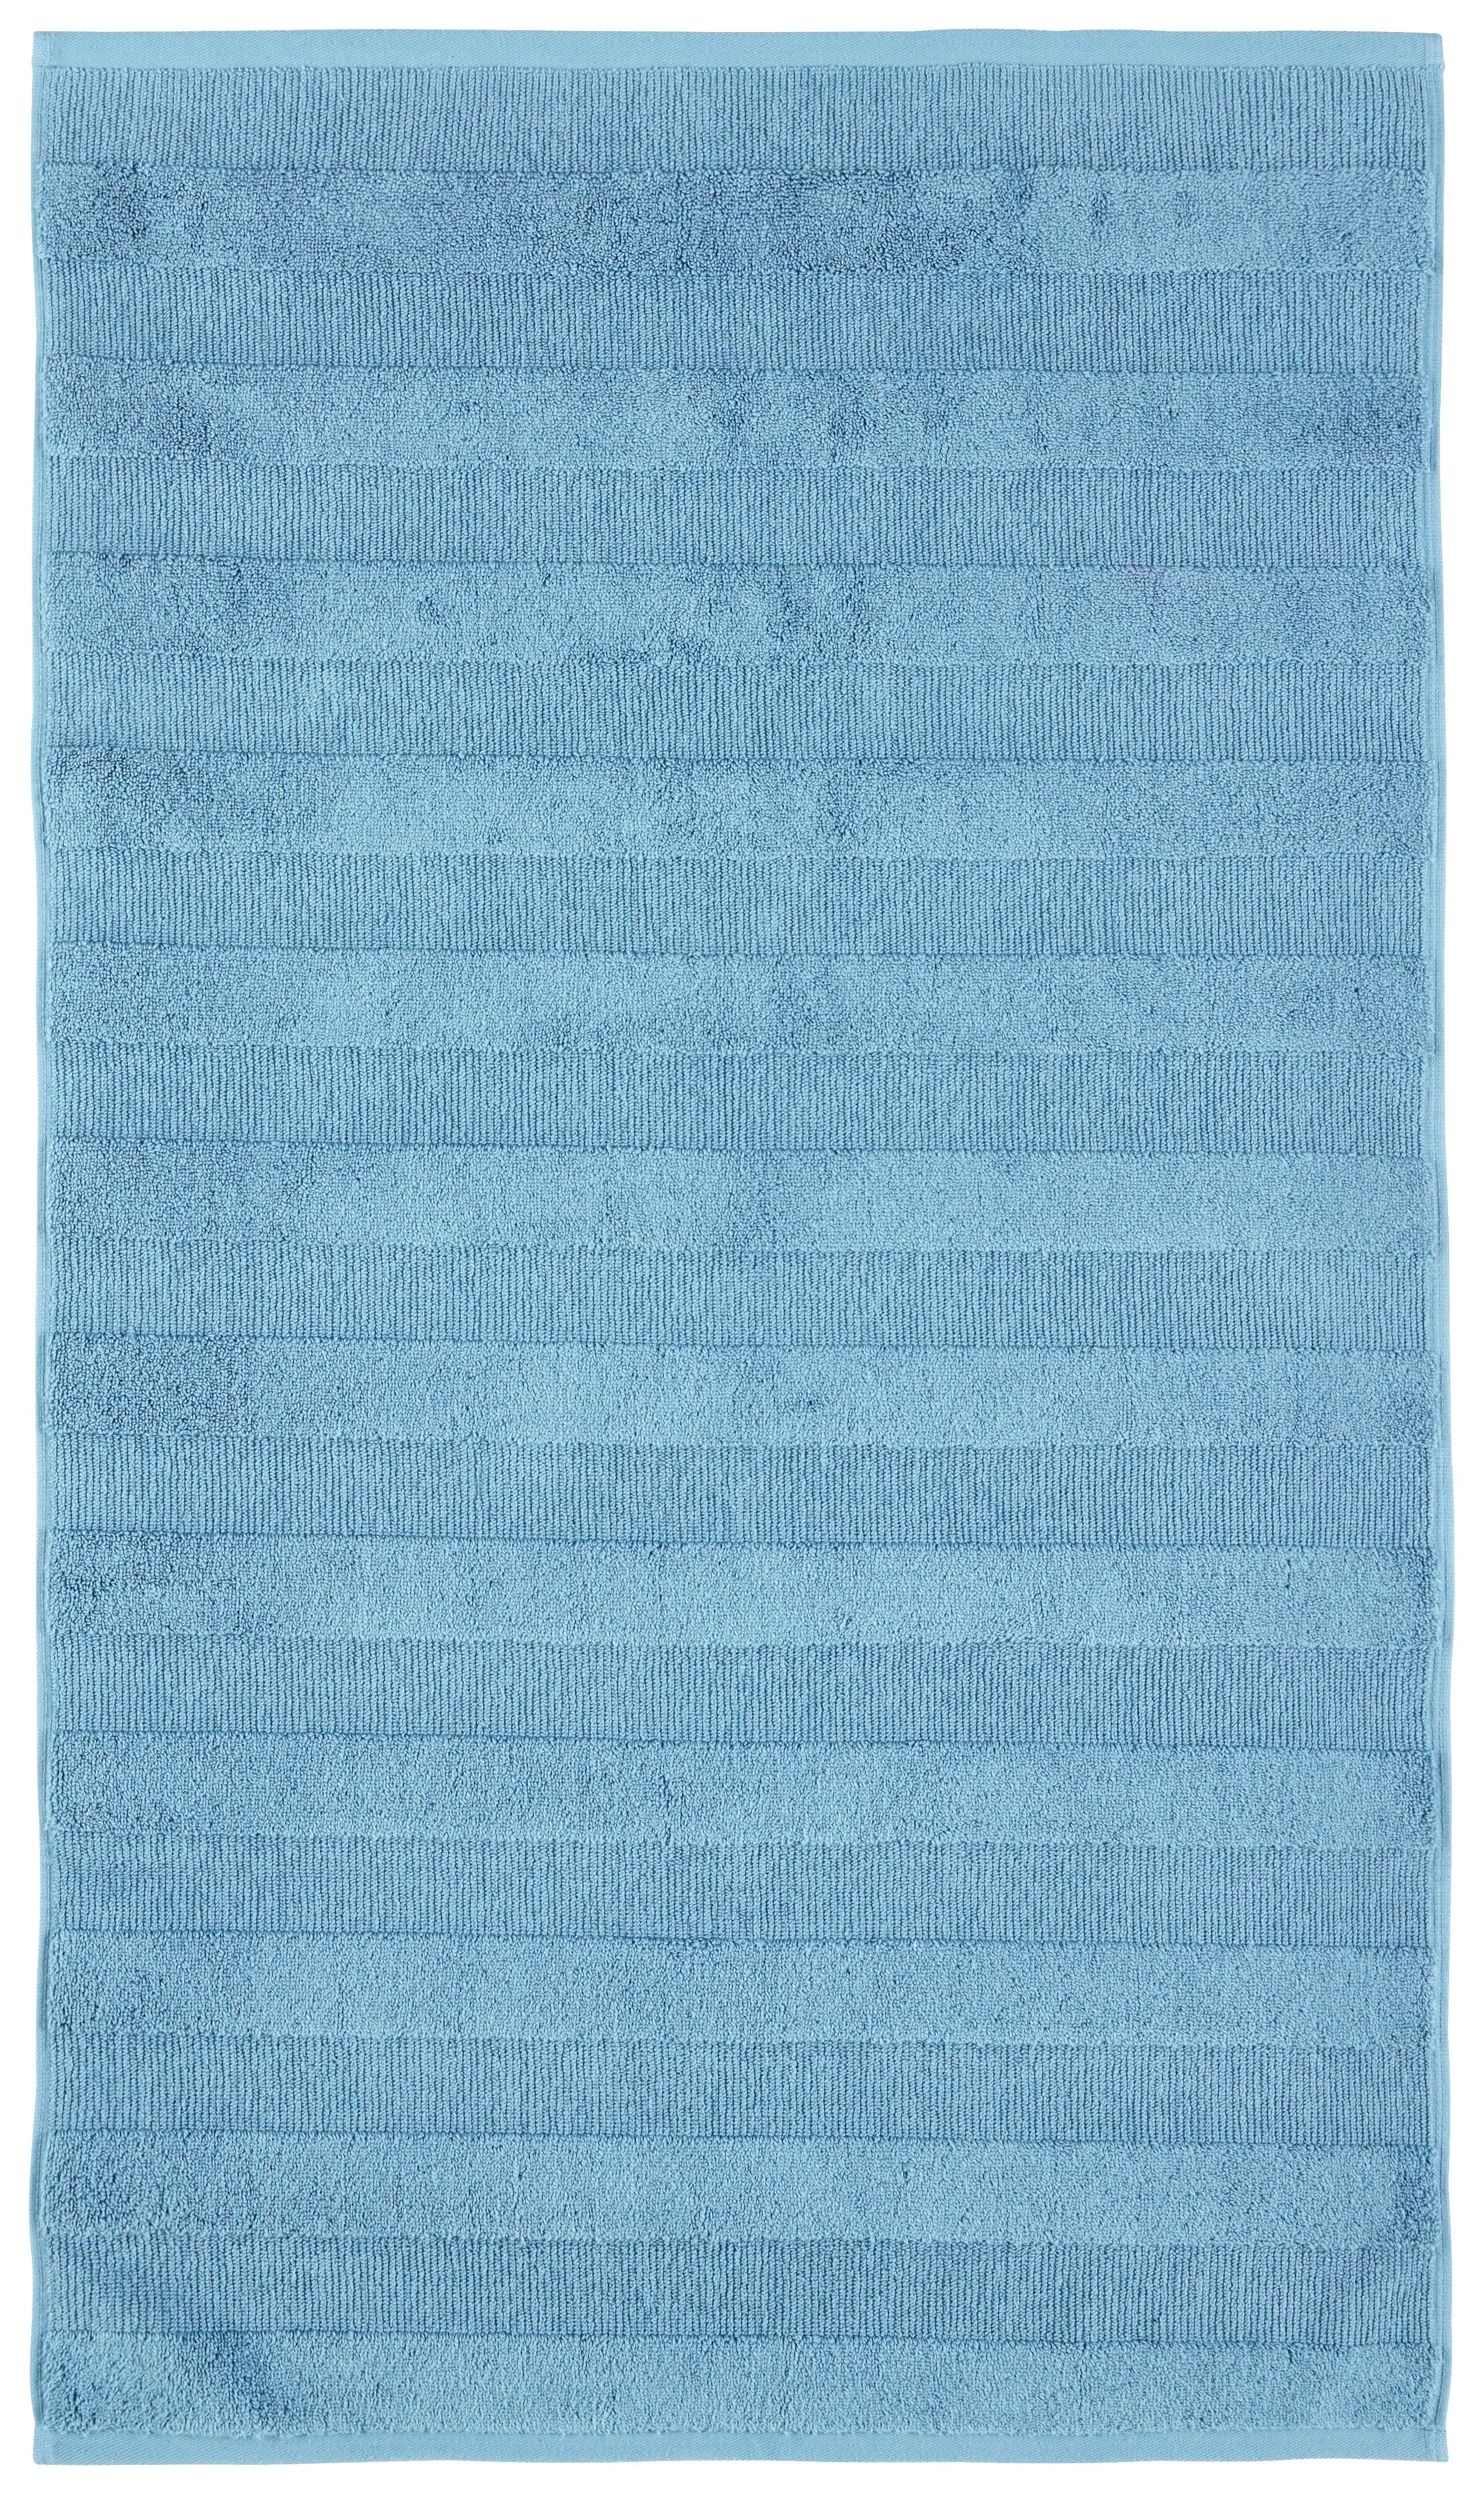 Fürdőszobaszőnyeg Chris - Kék, Textil (60/100cm) - Premium Living